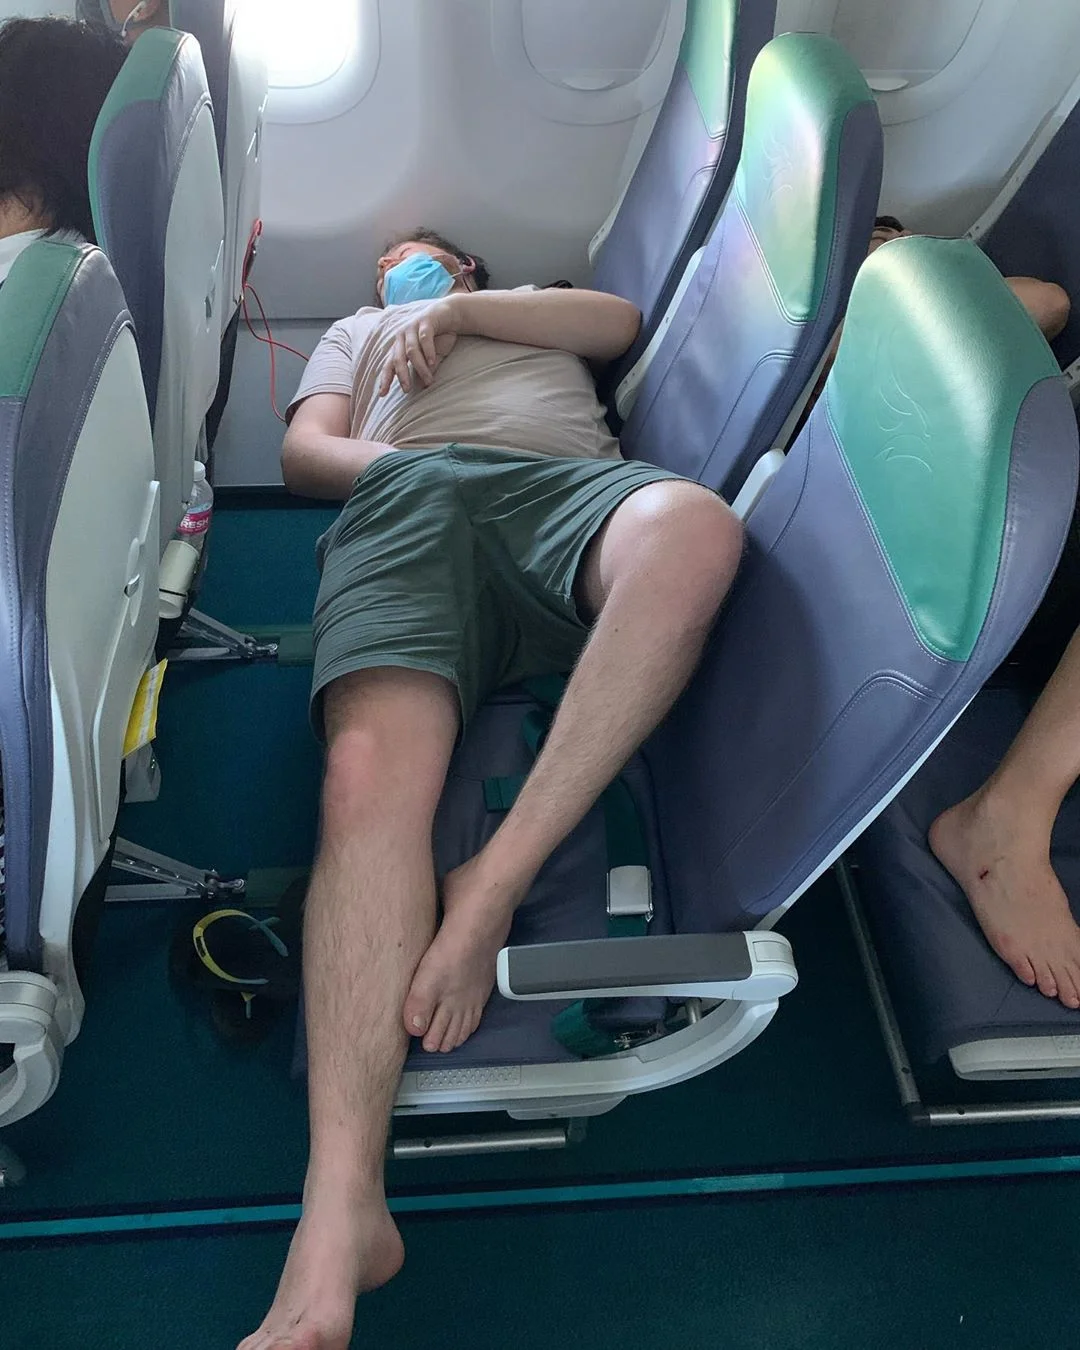 Странная поза мужчины в самолете заставила всех пассажиров краснеть - фото 471243